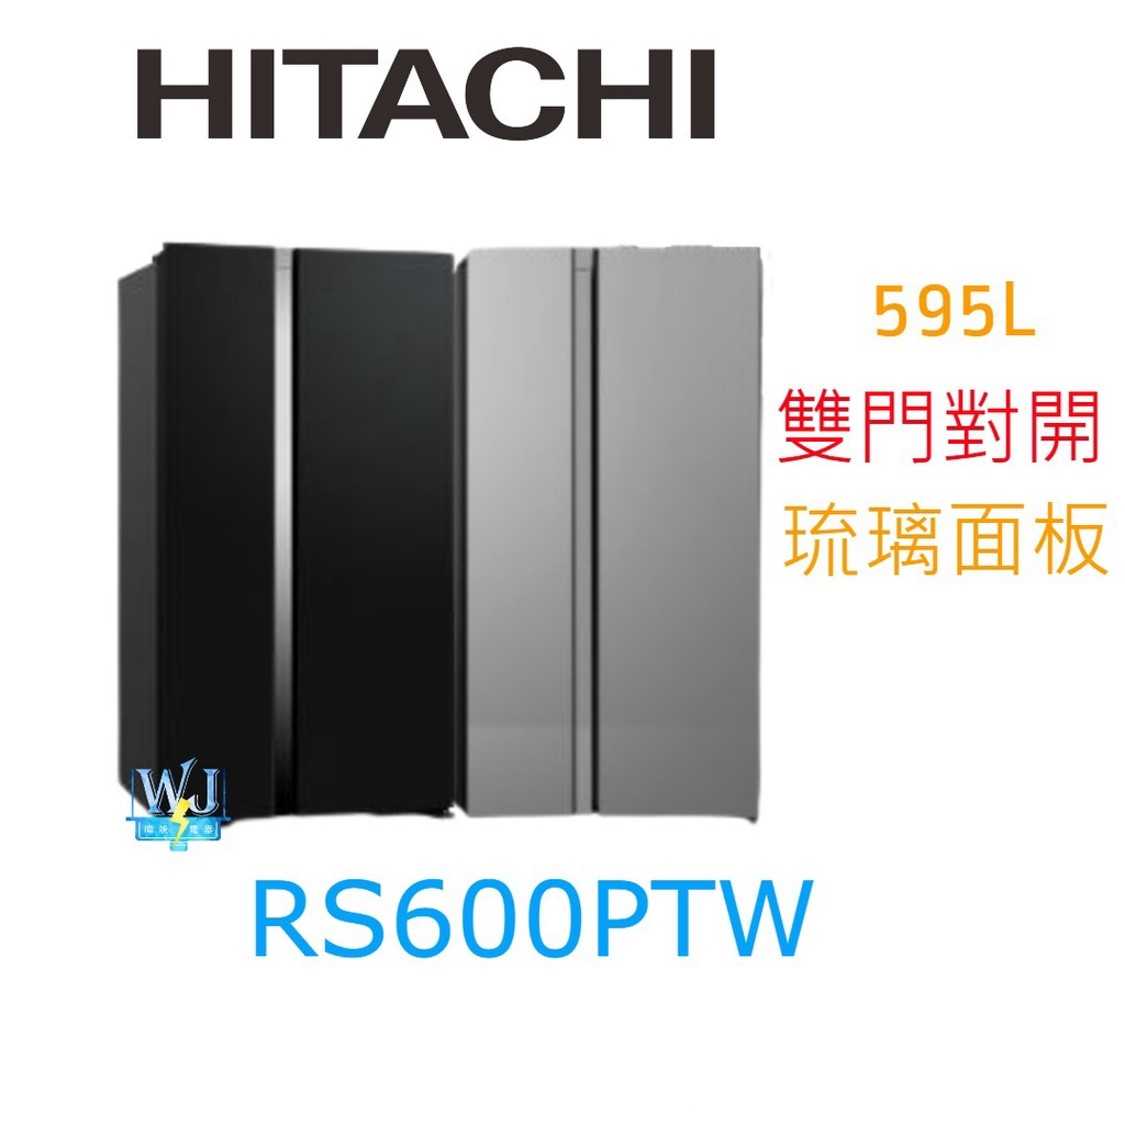 現貨*原廠保固【獨家折扣碼】HITACHI 日立 RS600PTW 對開冰箱 R-S600PTW 大容量 雙門 電冰箱